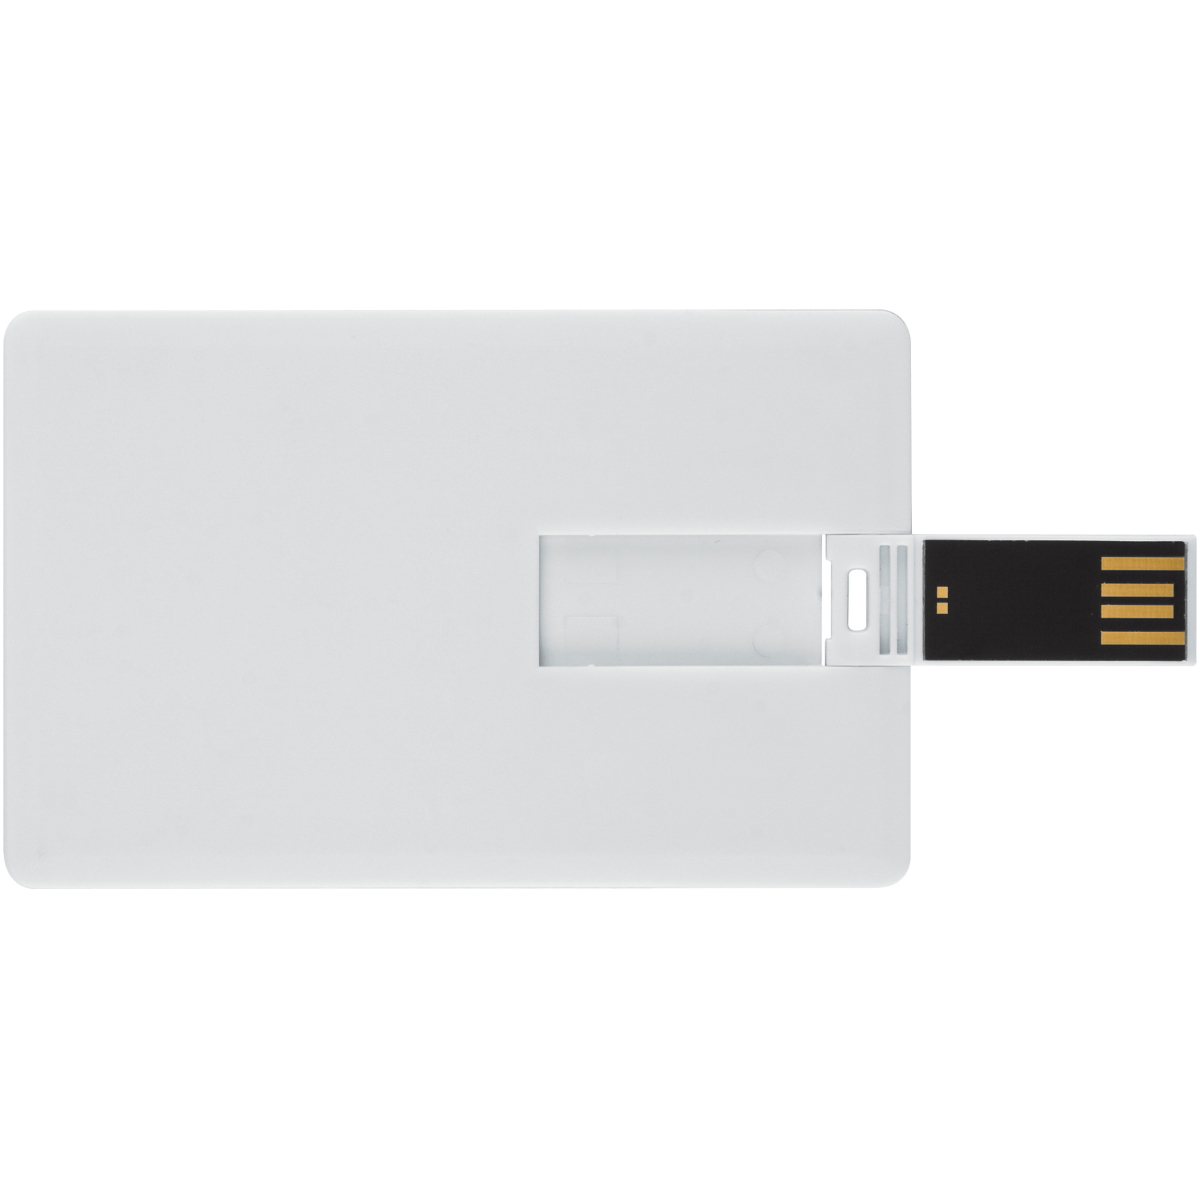 USB GERMANY ® USB-Stick (Weiss, GB) Kreditkarte 16